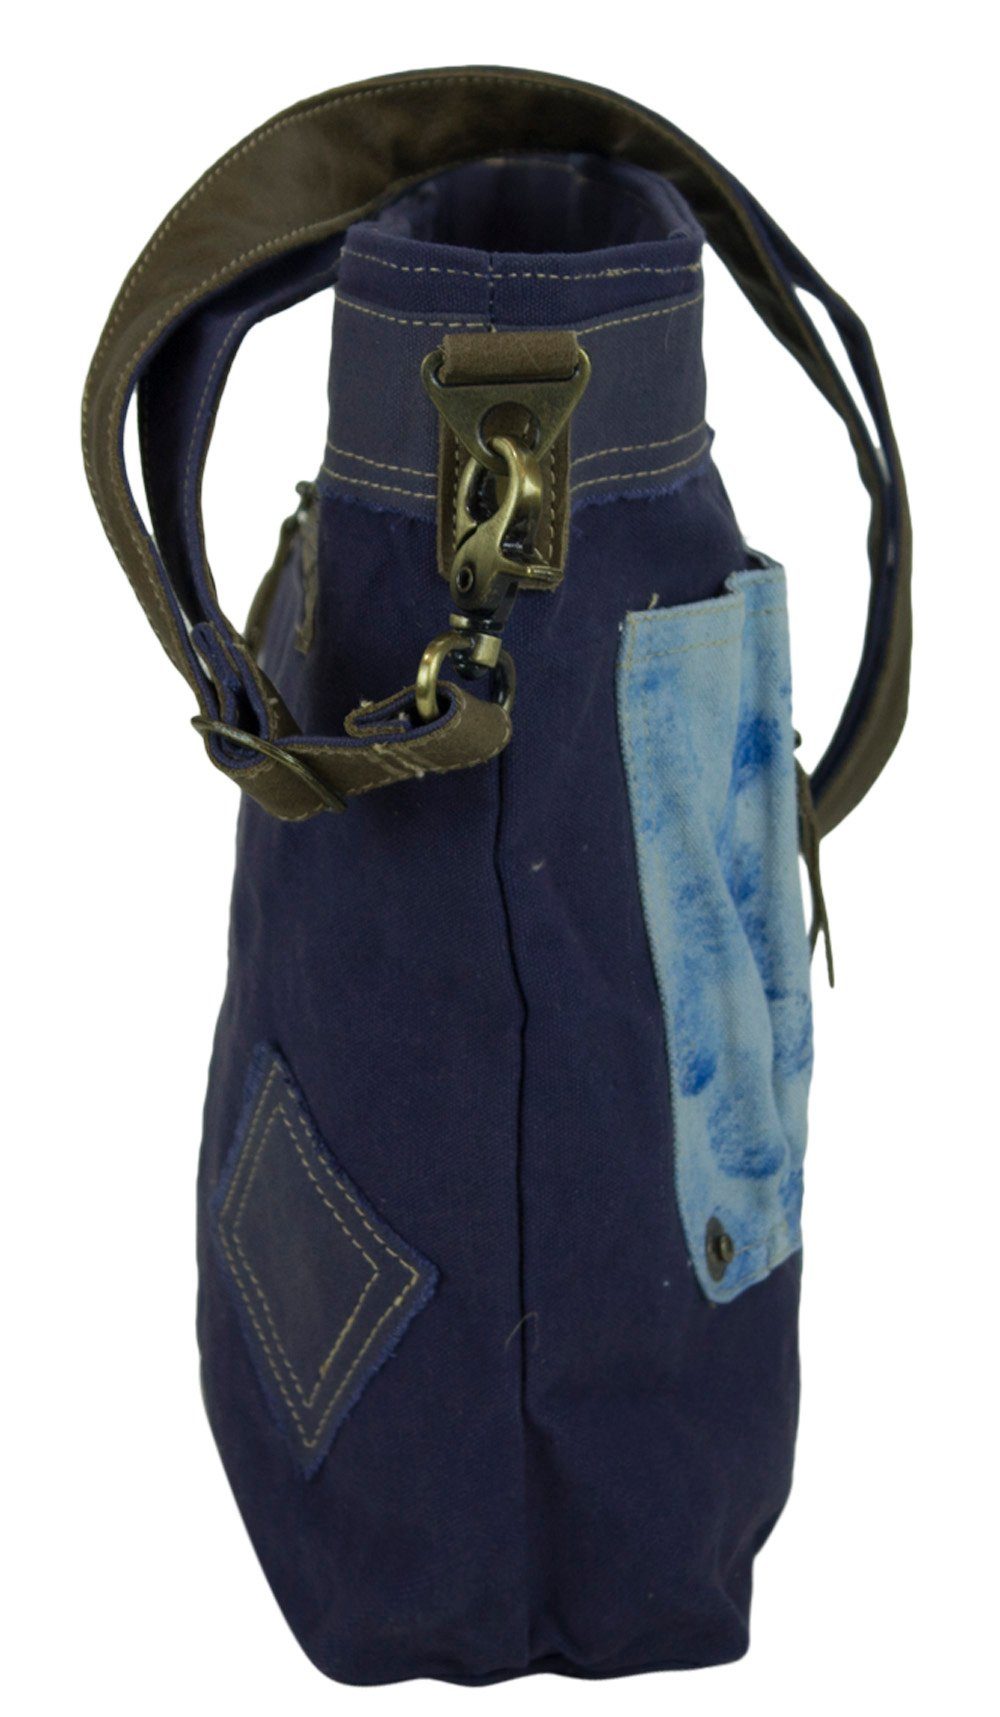 Blaue Tasche mit Vintage Canvas design., Schulterriemen und Fronttasche Umhängetasche Umhängetasche Sunsa Stifthalter abnehmbaren Retro in Taschen. mit